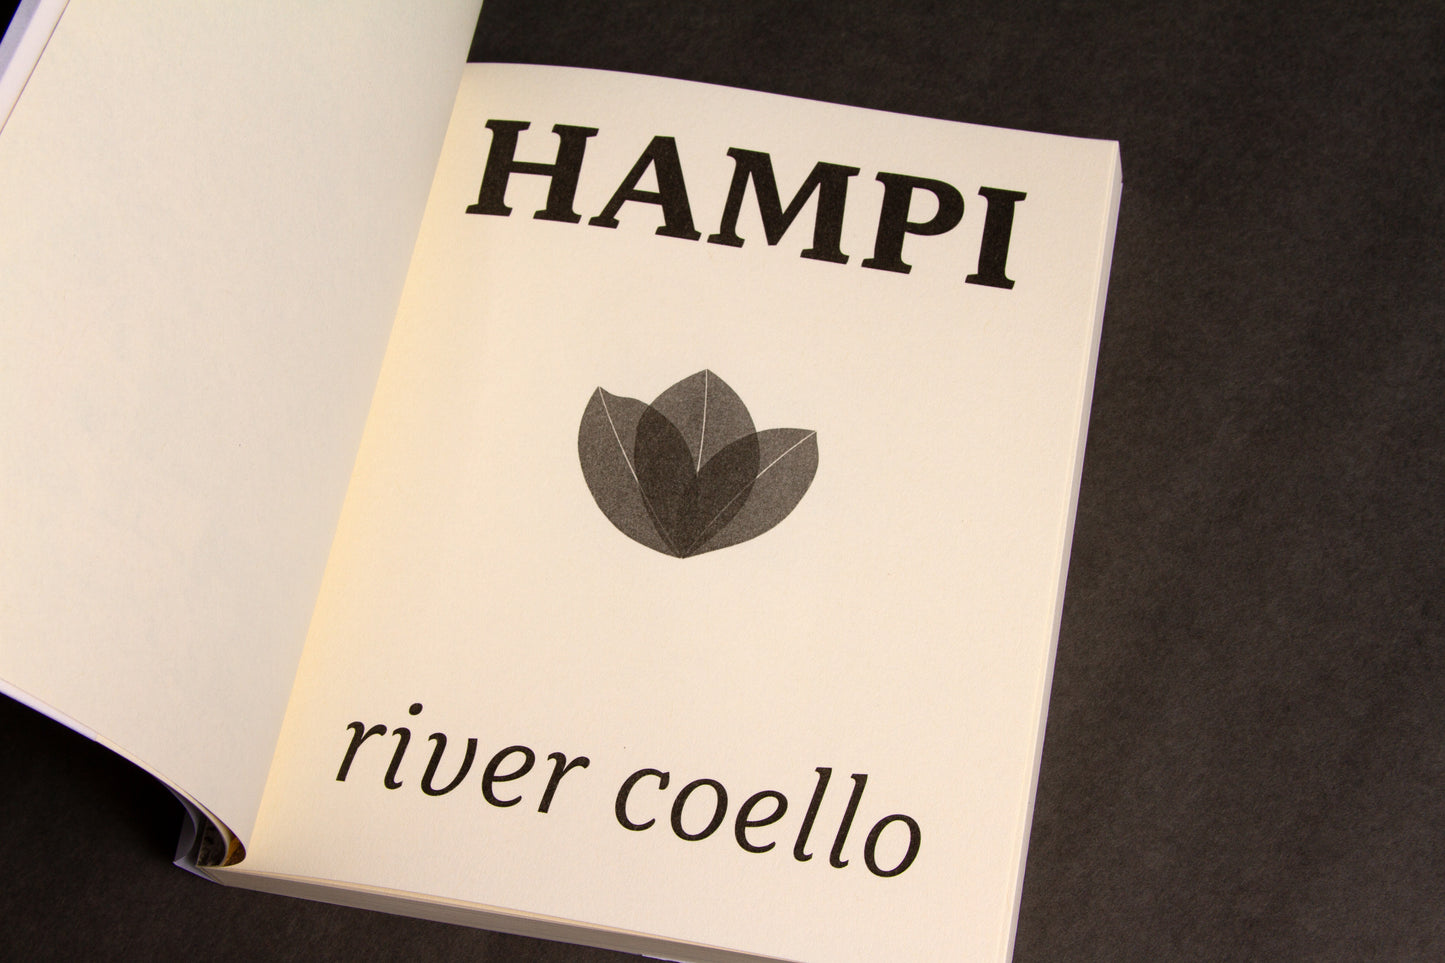 HAMPI by River Coello